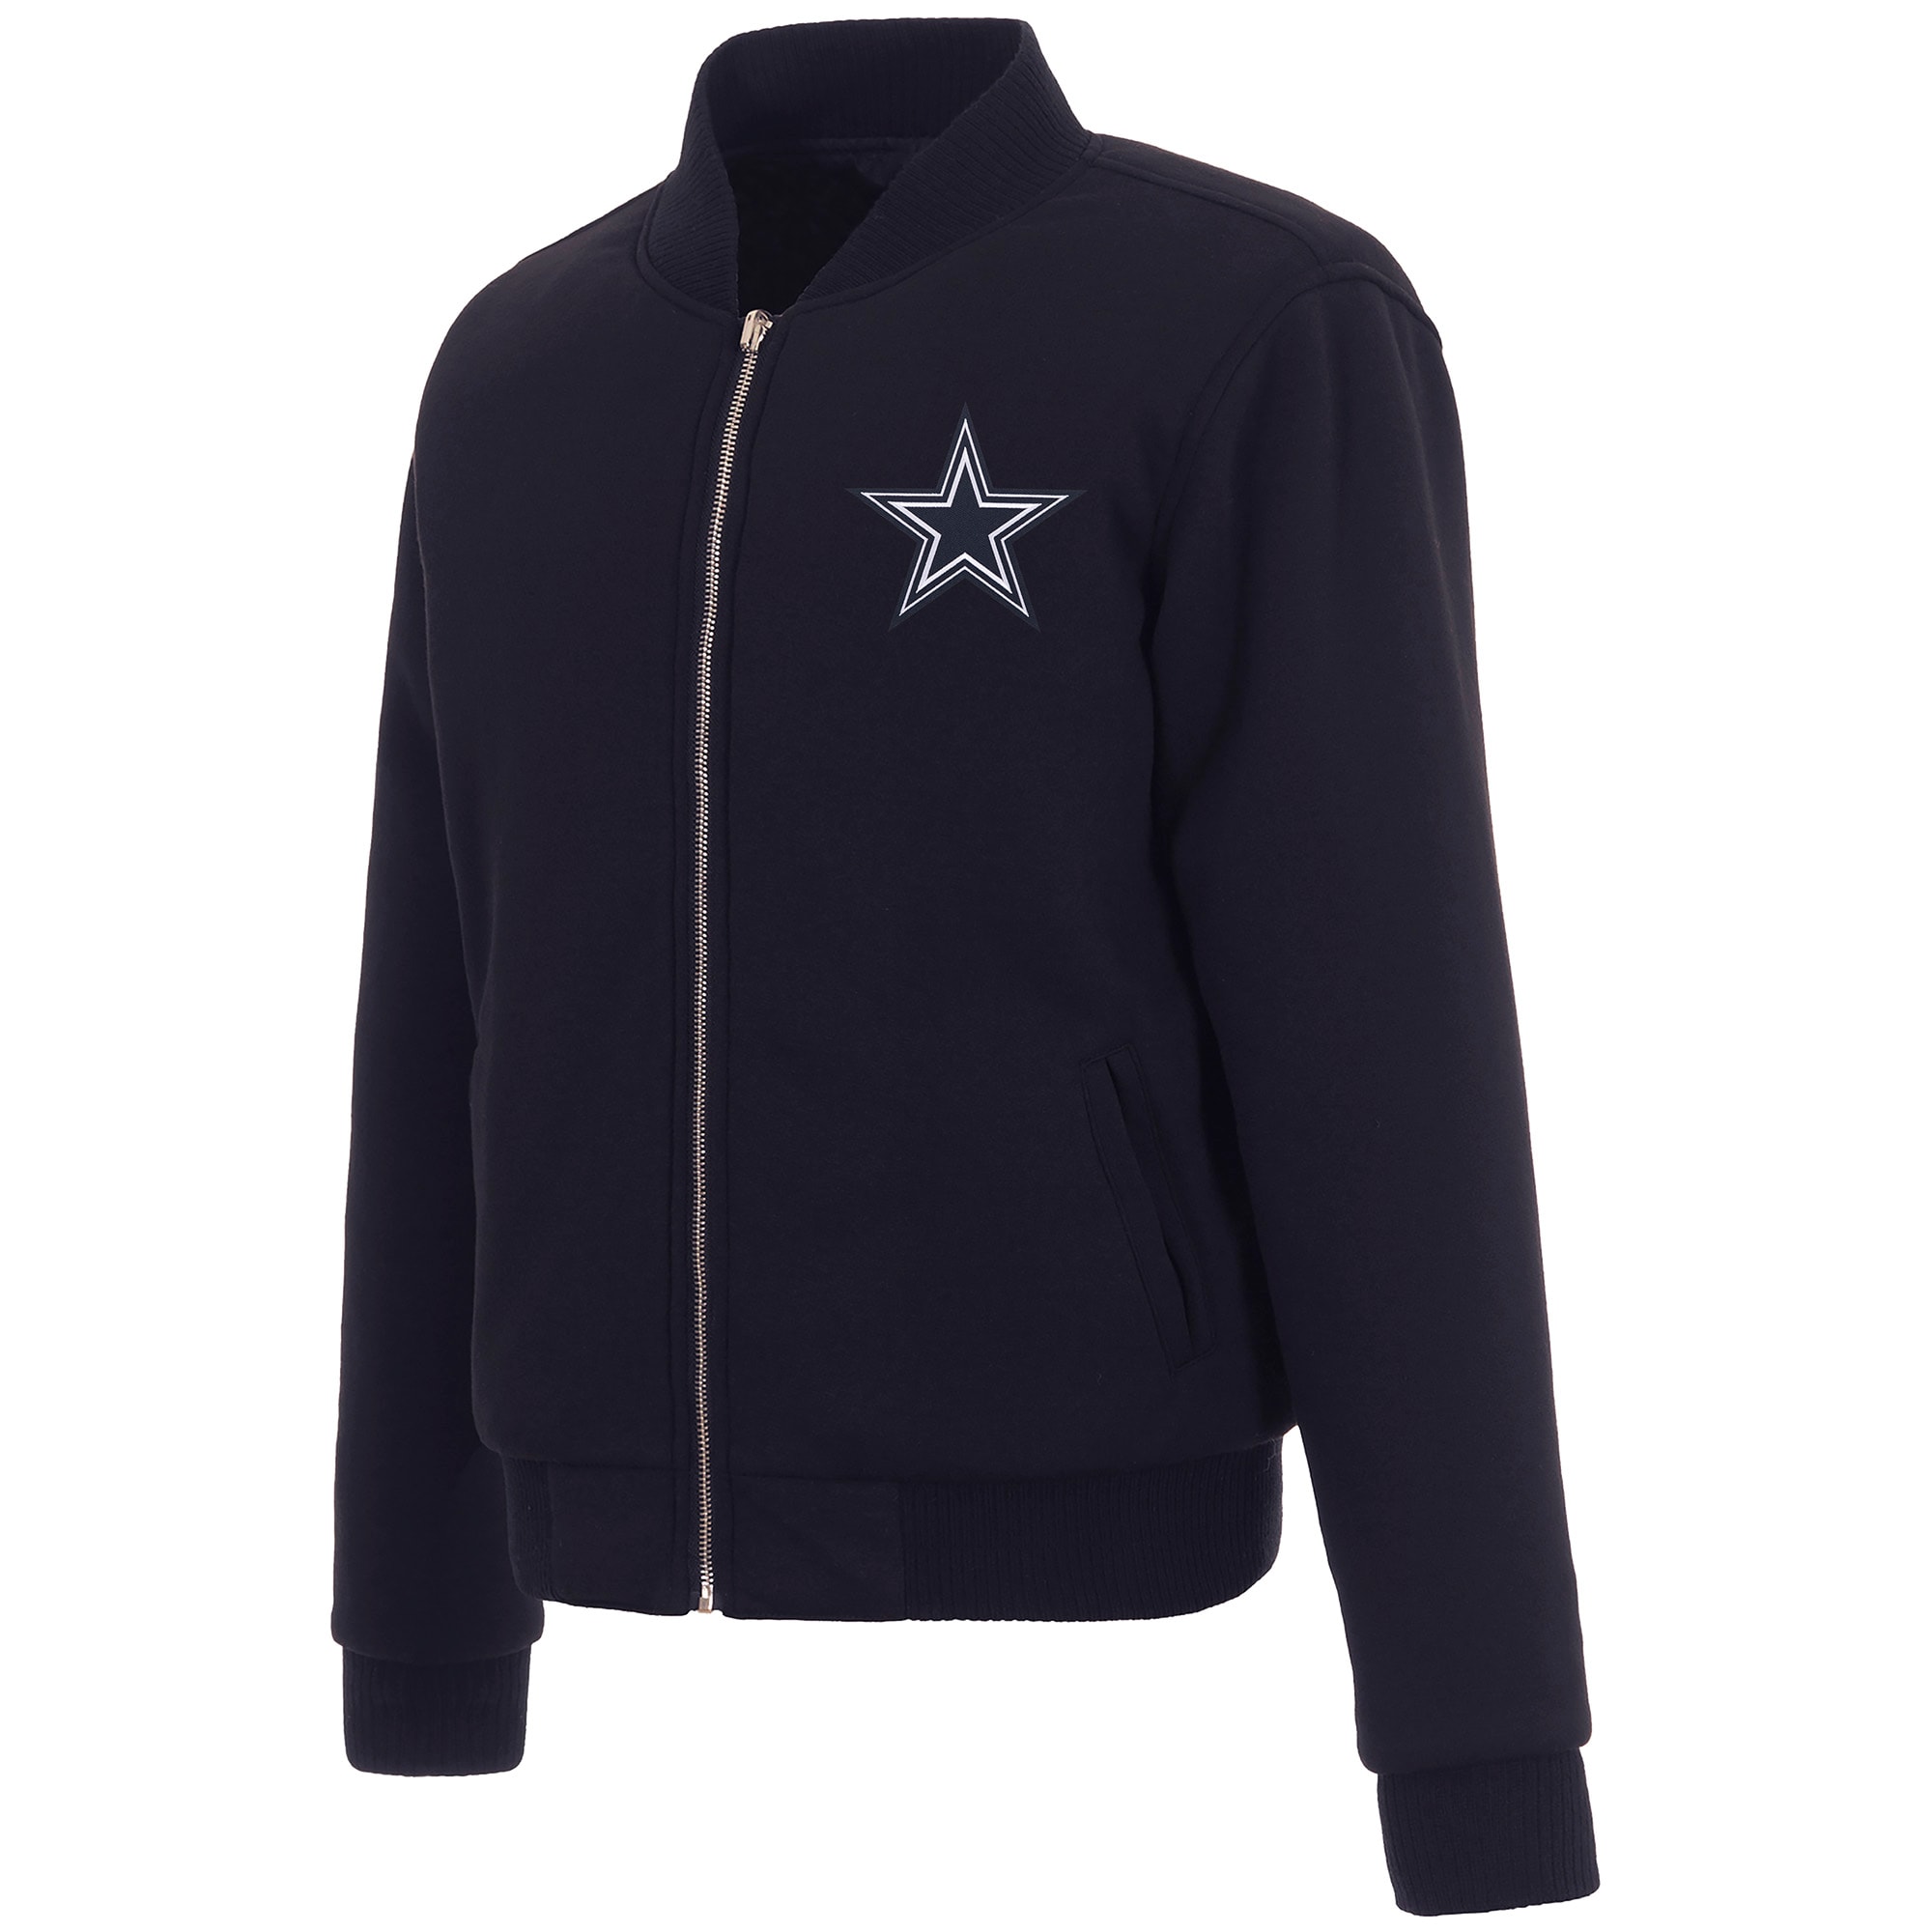 Women's JH Design Navy Dallas Cowboys Reversible Fleece Full-Zip Jacket - image 2 of 5